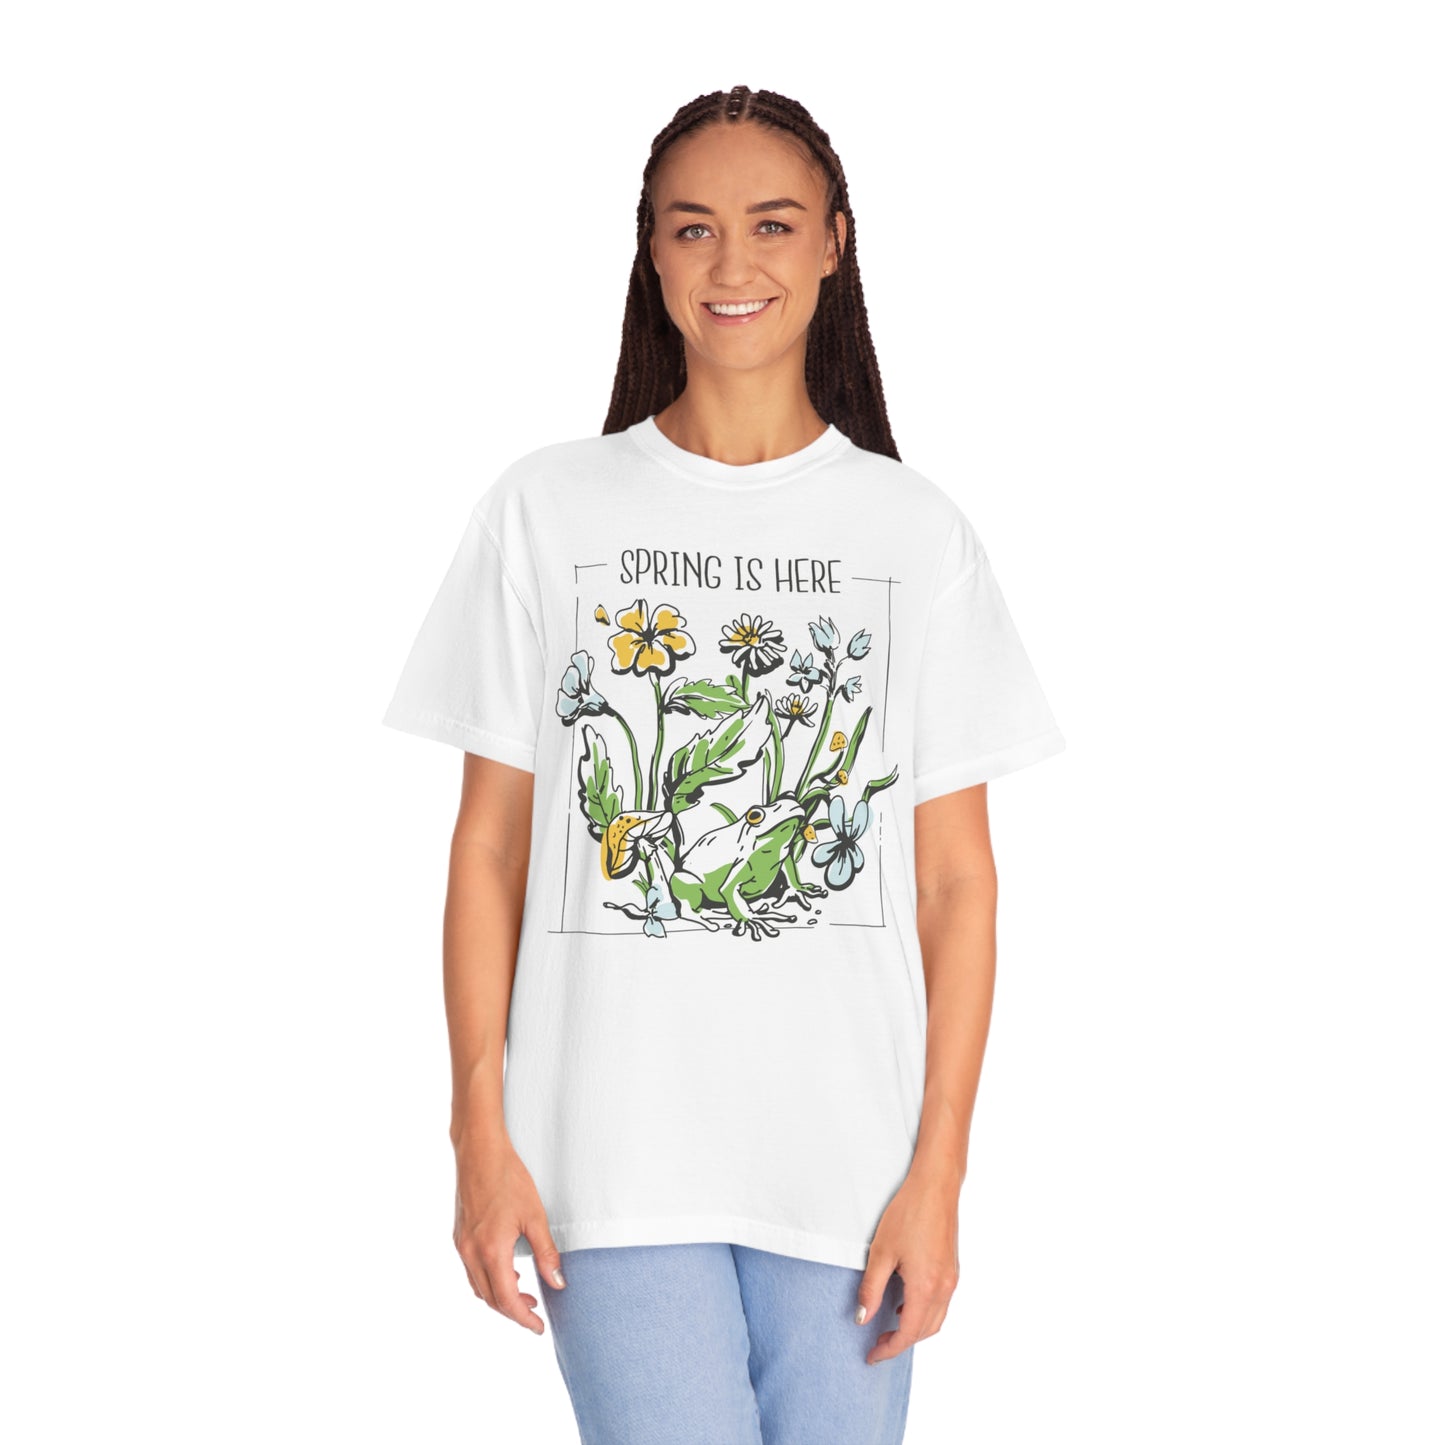 Spring Awakening: Frog Under Flowers Comfort Colors 1717 T-Shirt, Plant Lover Gift, Nature Lover Shirt, Flower Shirt